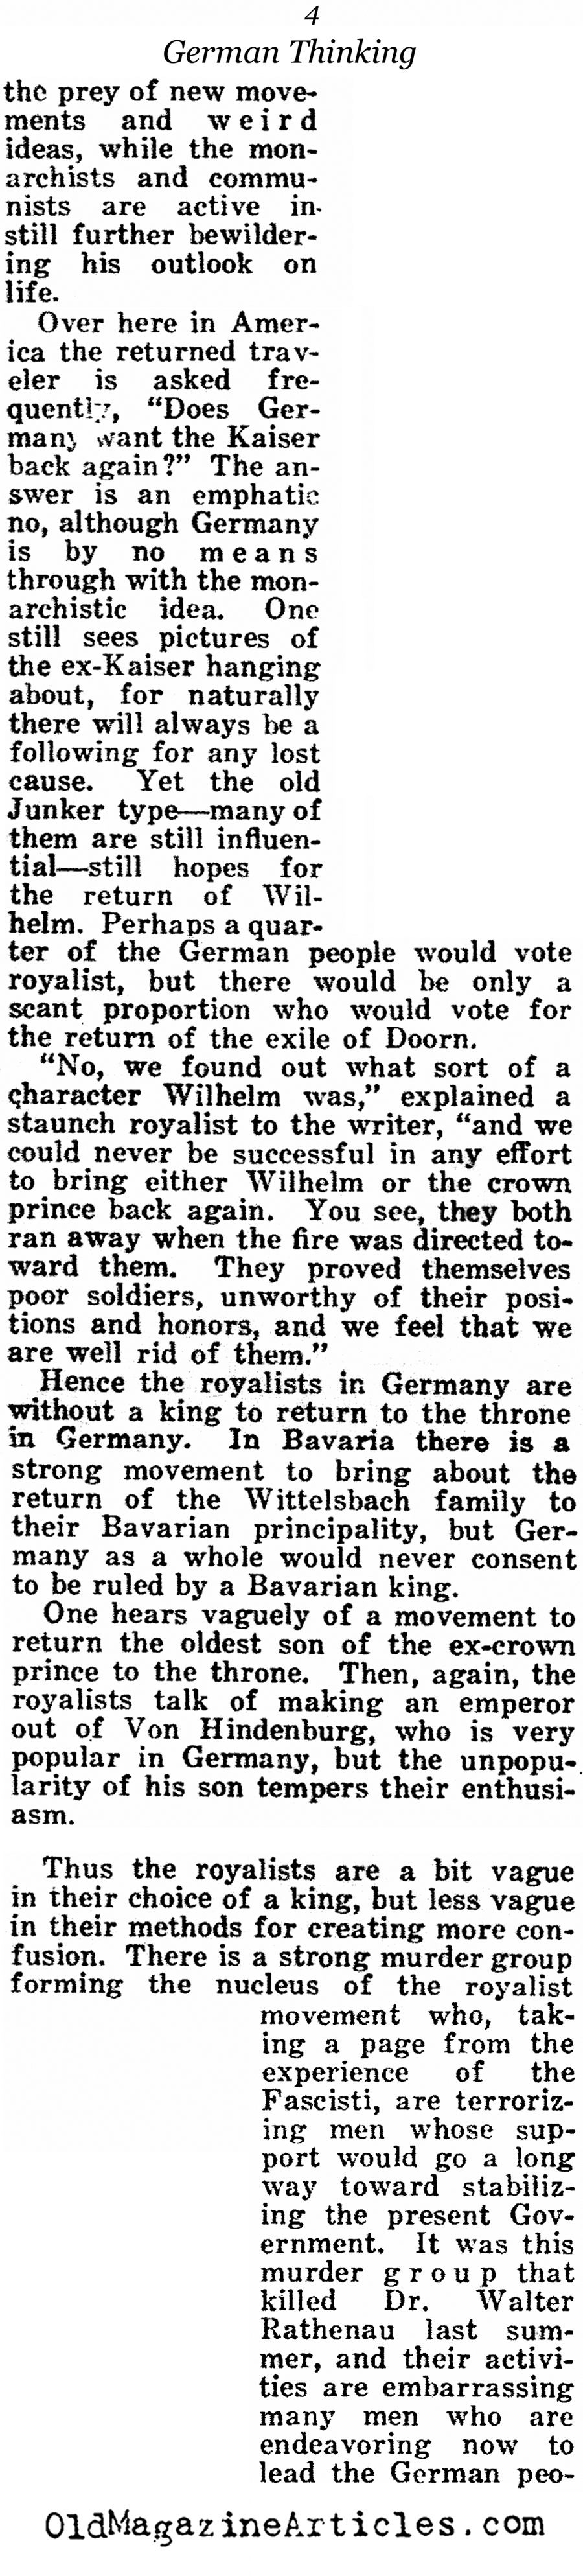 German Post-War Thinking (American Legion Weekly, 1922)